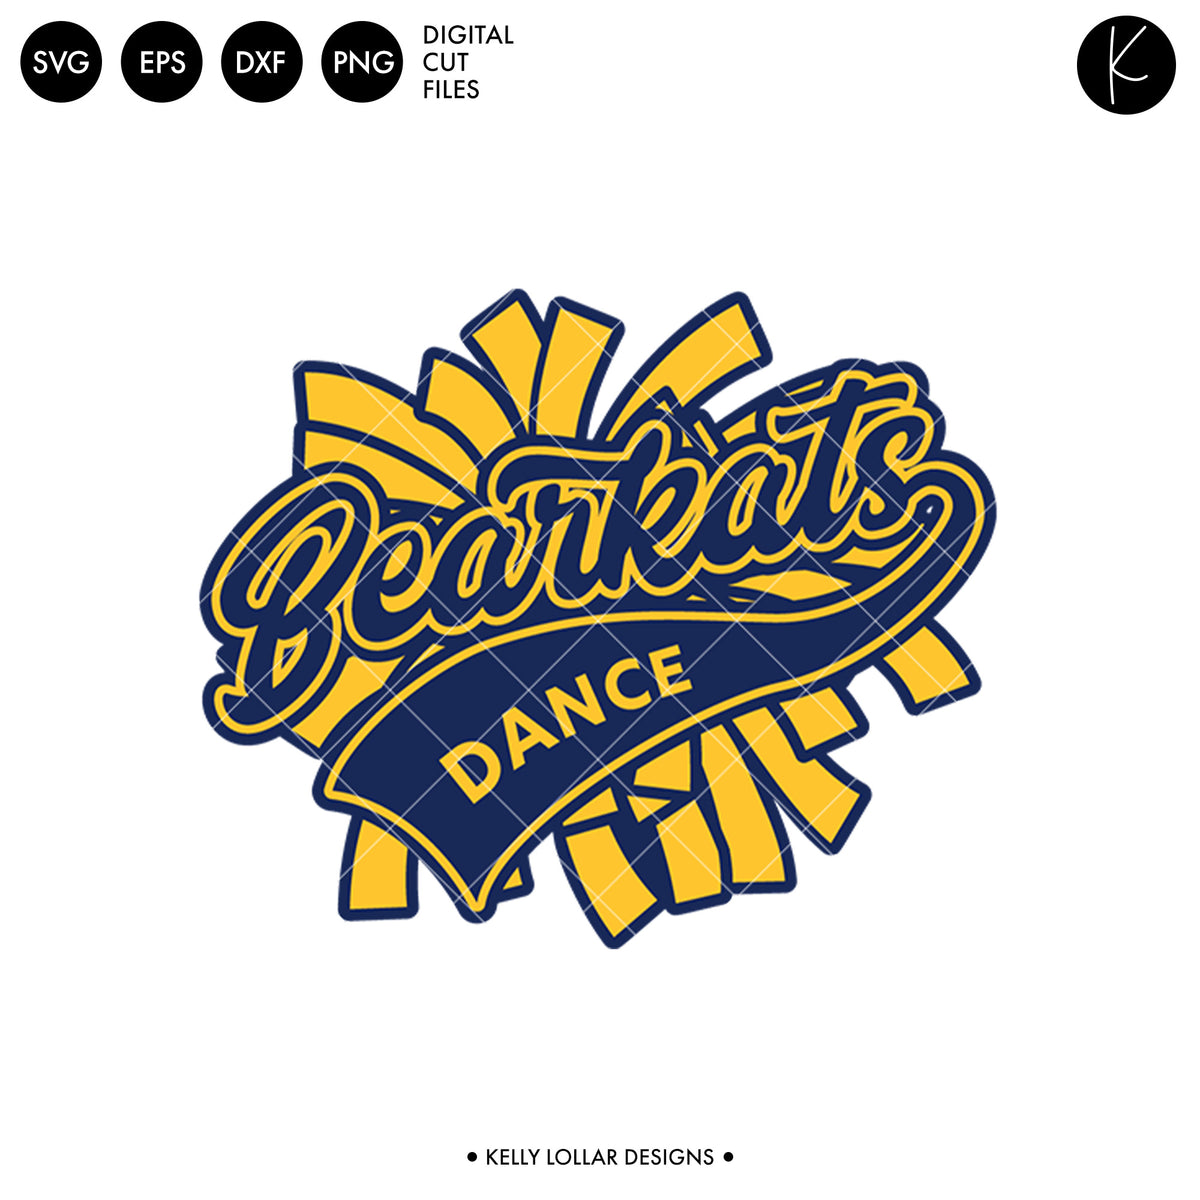 Bearkats Dance Bundle | SVG DXF EPS PNG Cut Files